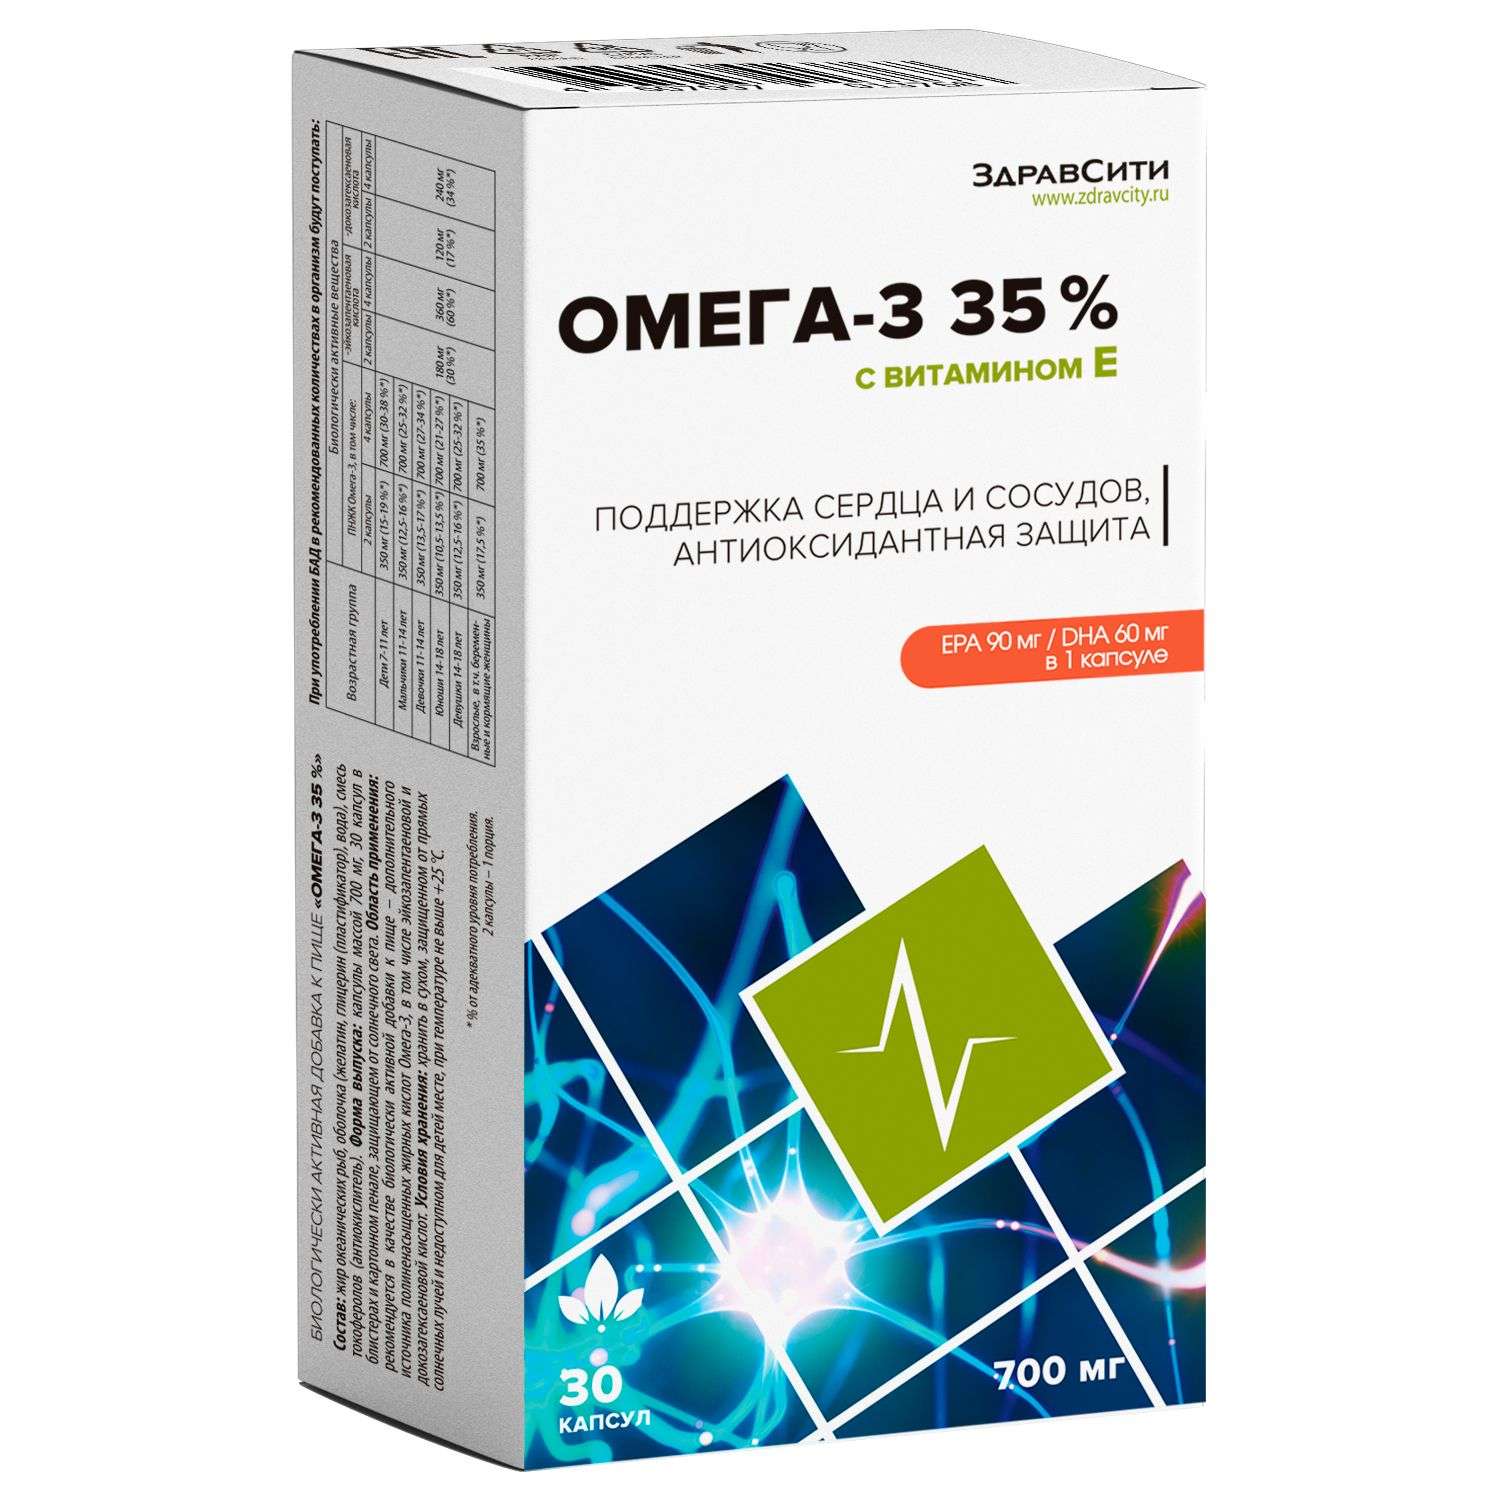 Биологически активная добавка Здравсити Омега-3 35% 700мг с витамином Е 30капсул - фото 1